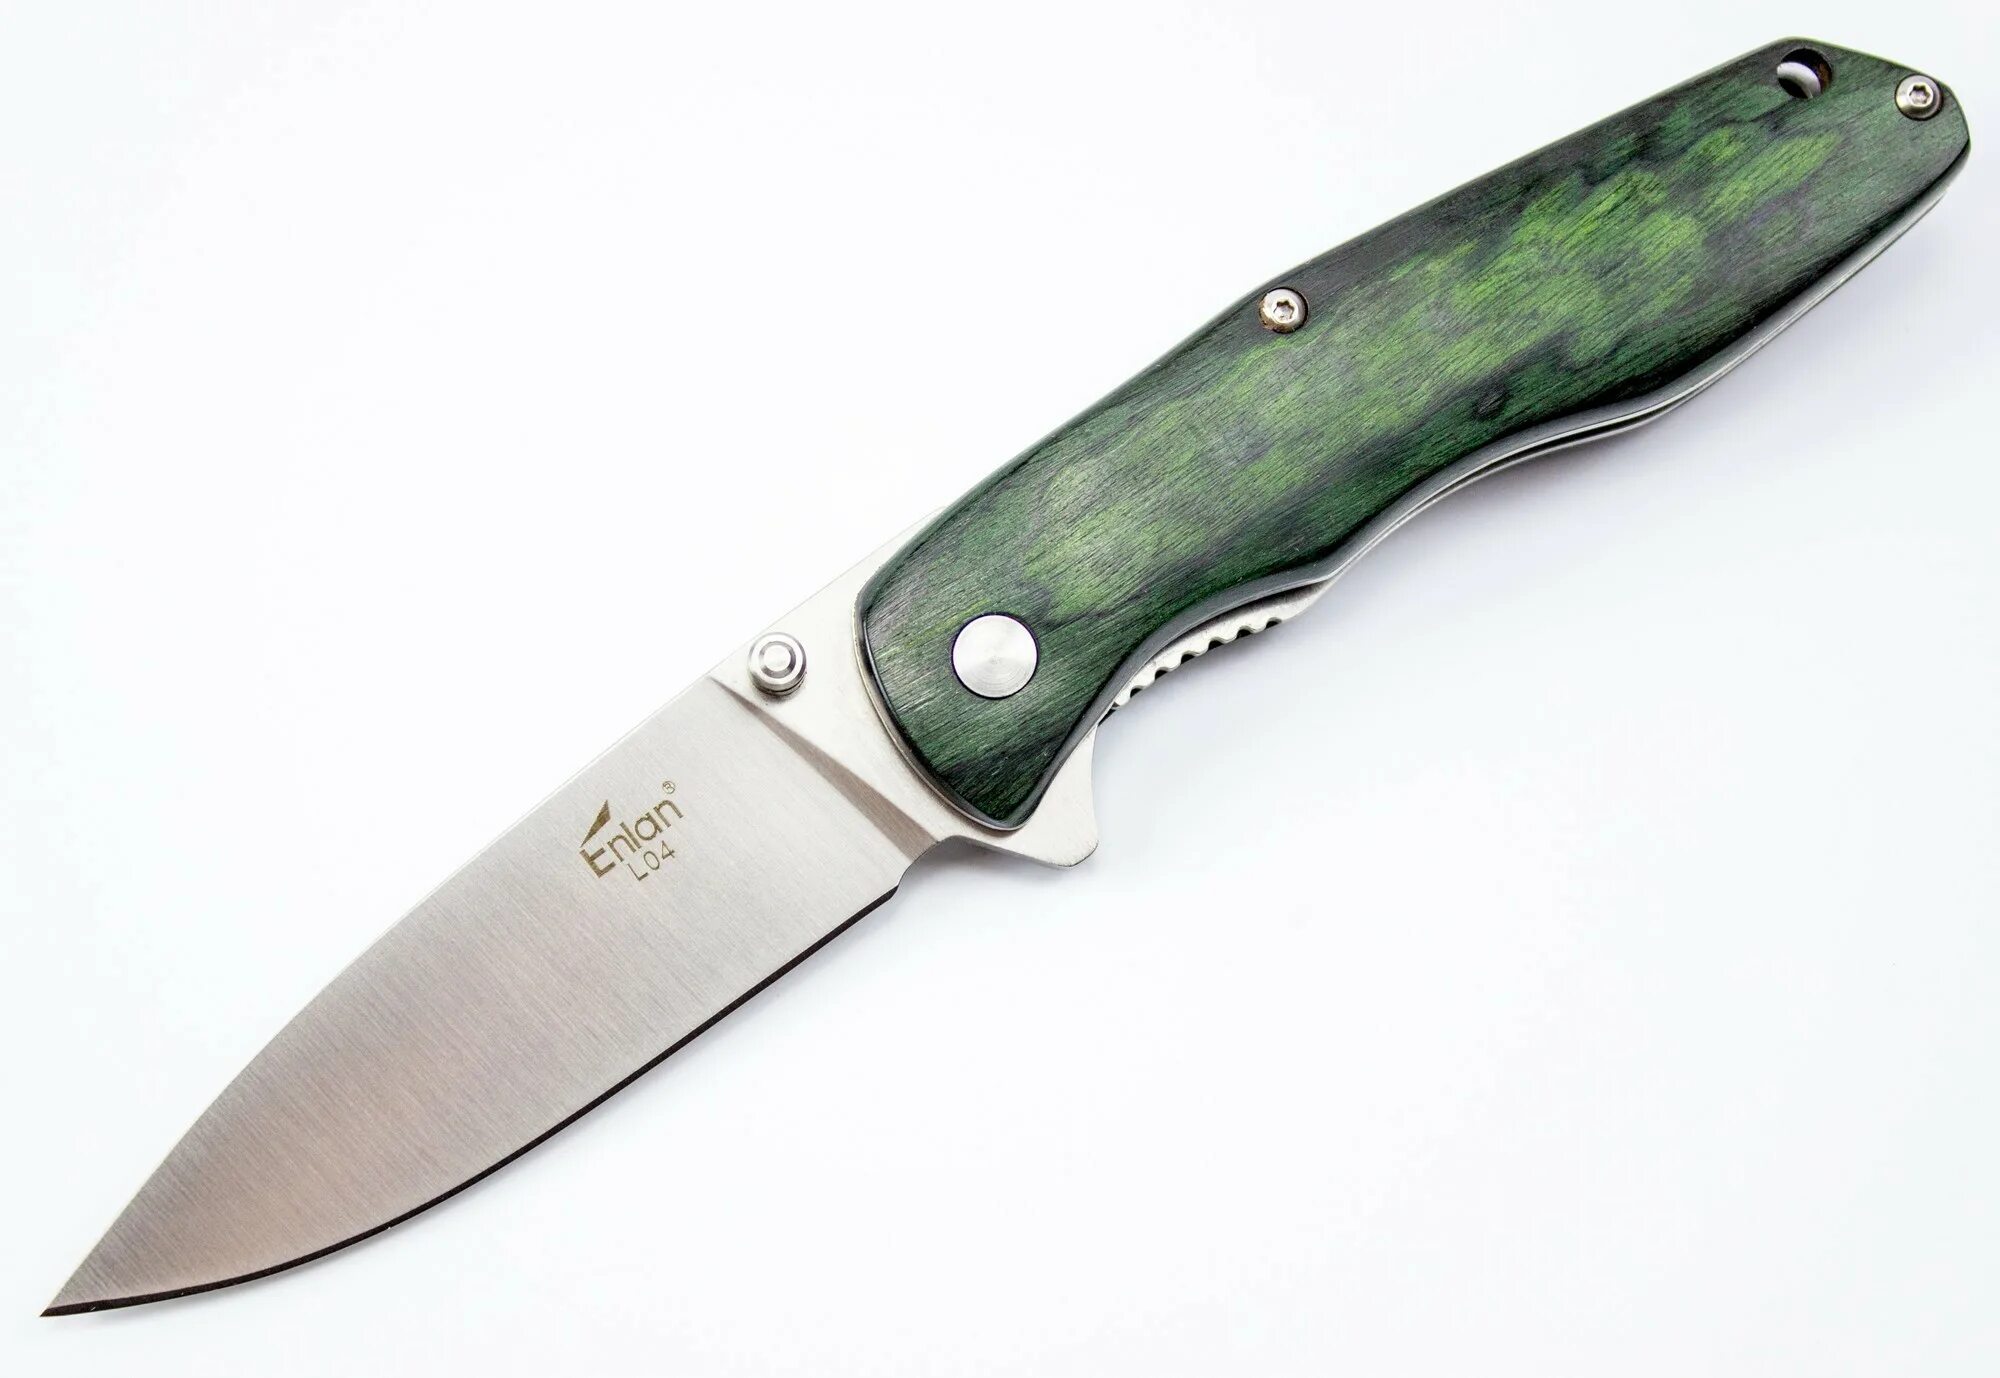 Ножи калининград купить. Enlan eg002. Складной нож Энлан. Enlan ew031 d2. Складной нож Cat model# 9800121g.